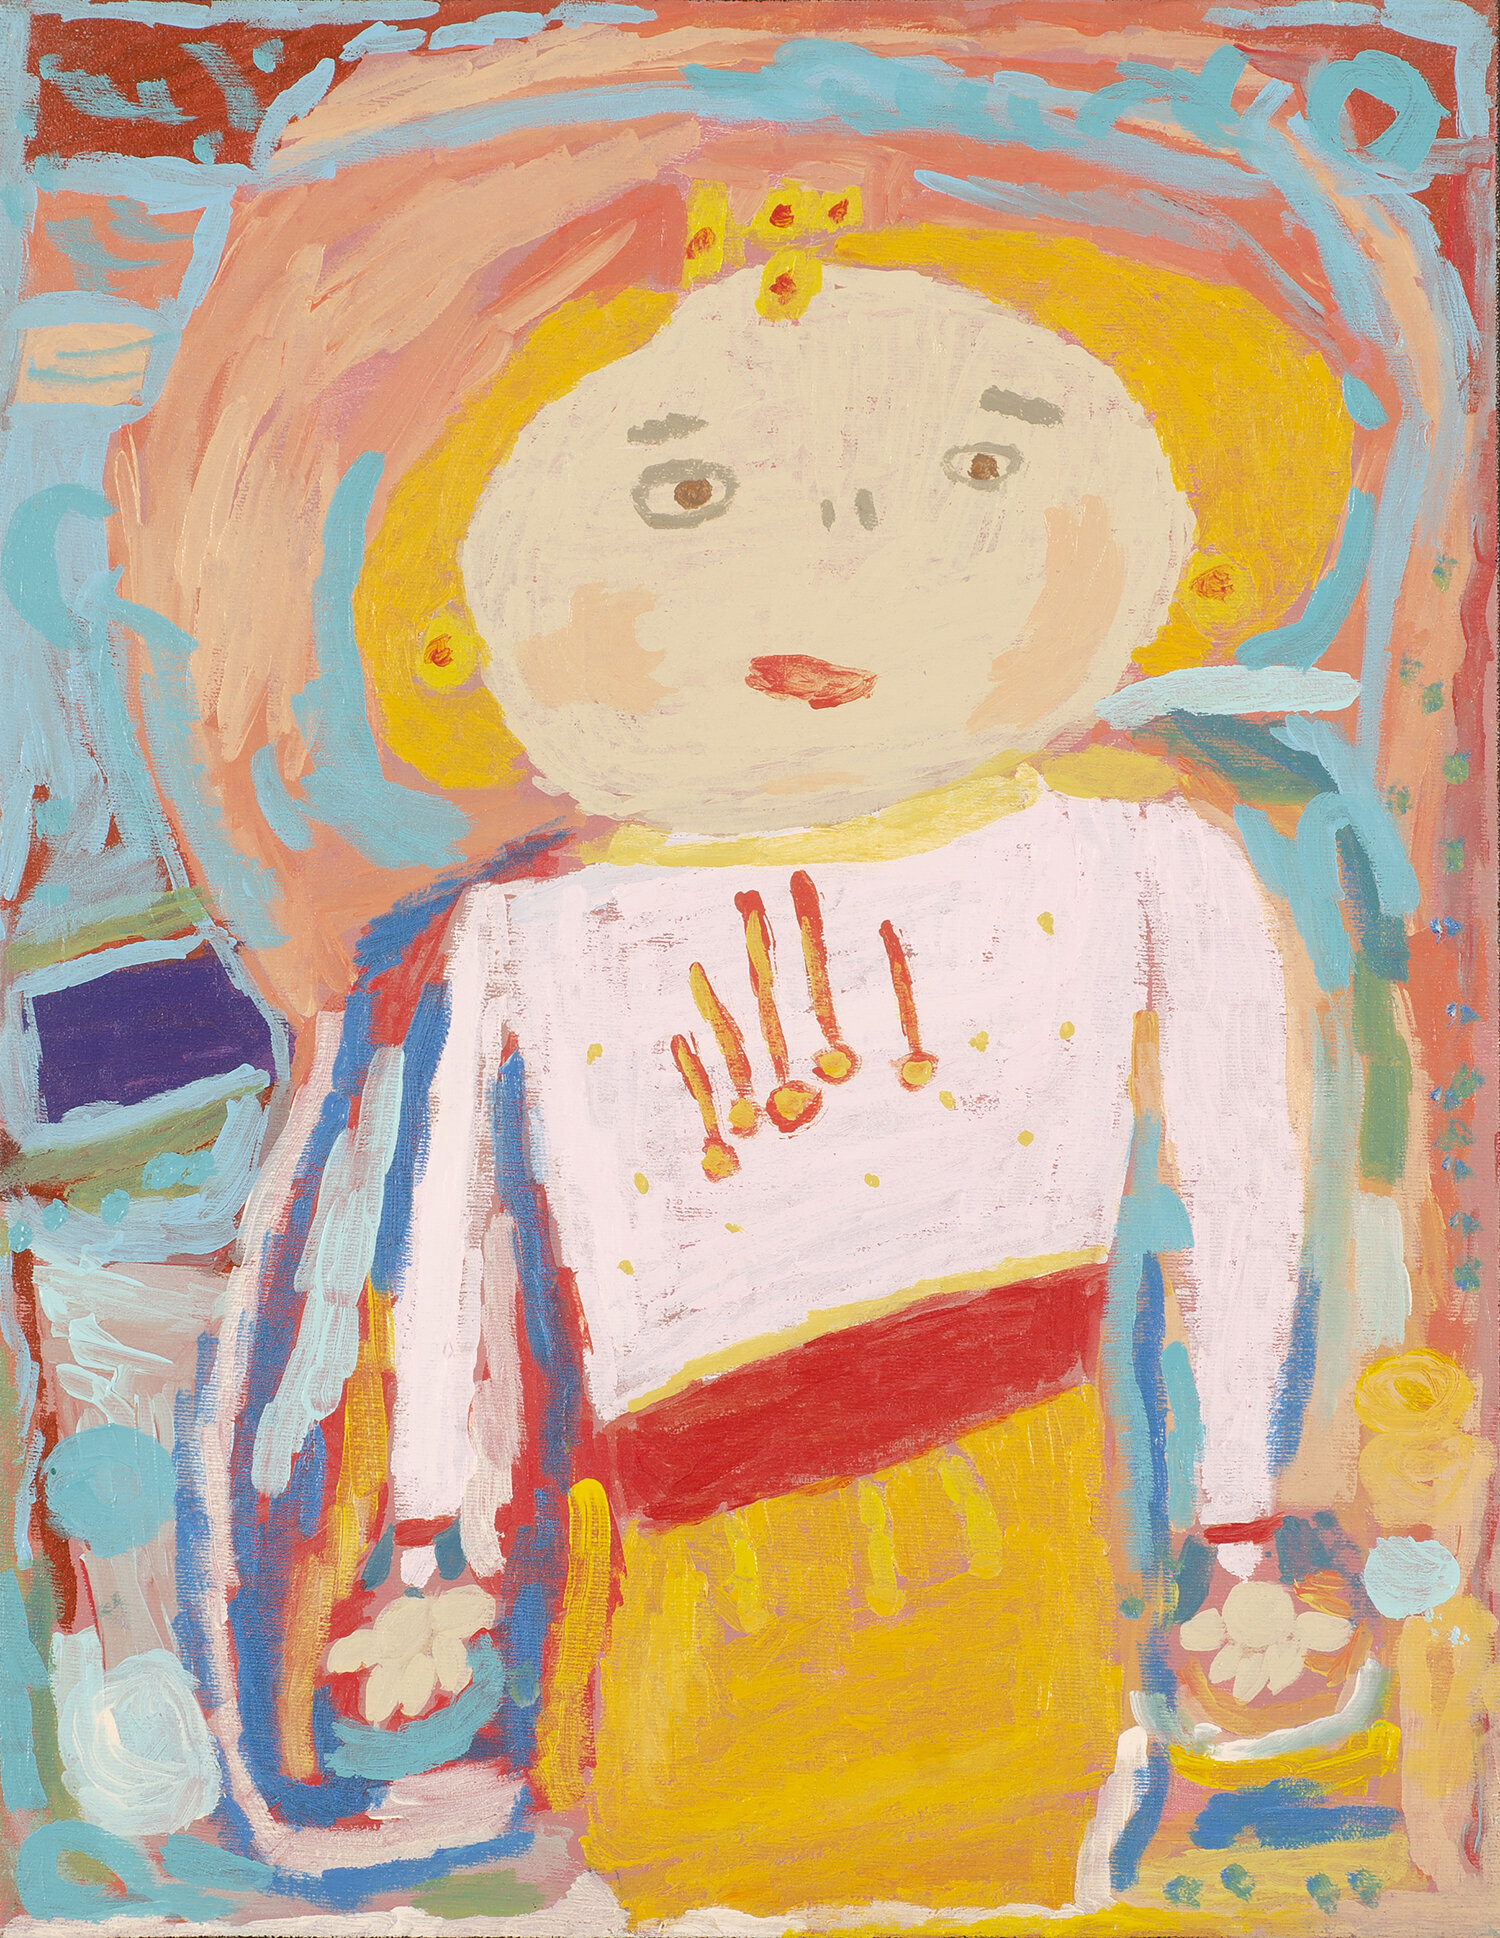 Chris Maveety, The Princess Doll, 14” x 18”, acrylic on canvas